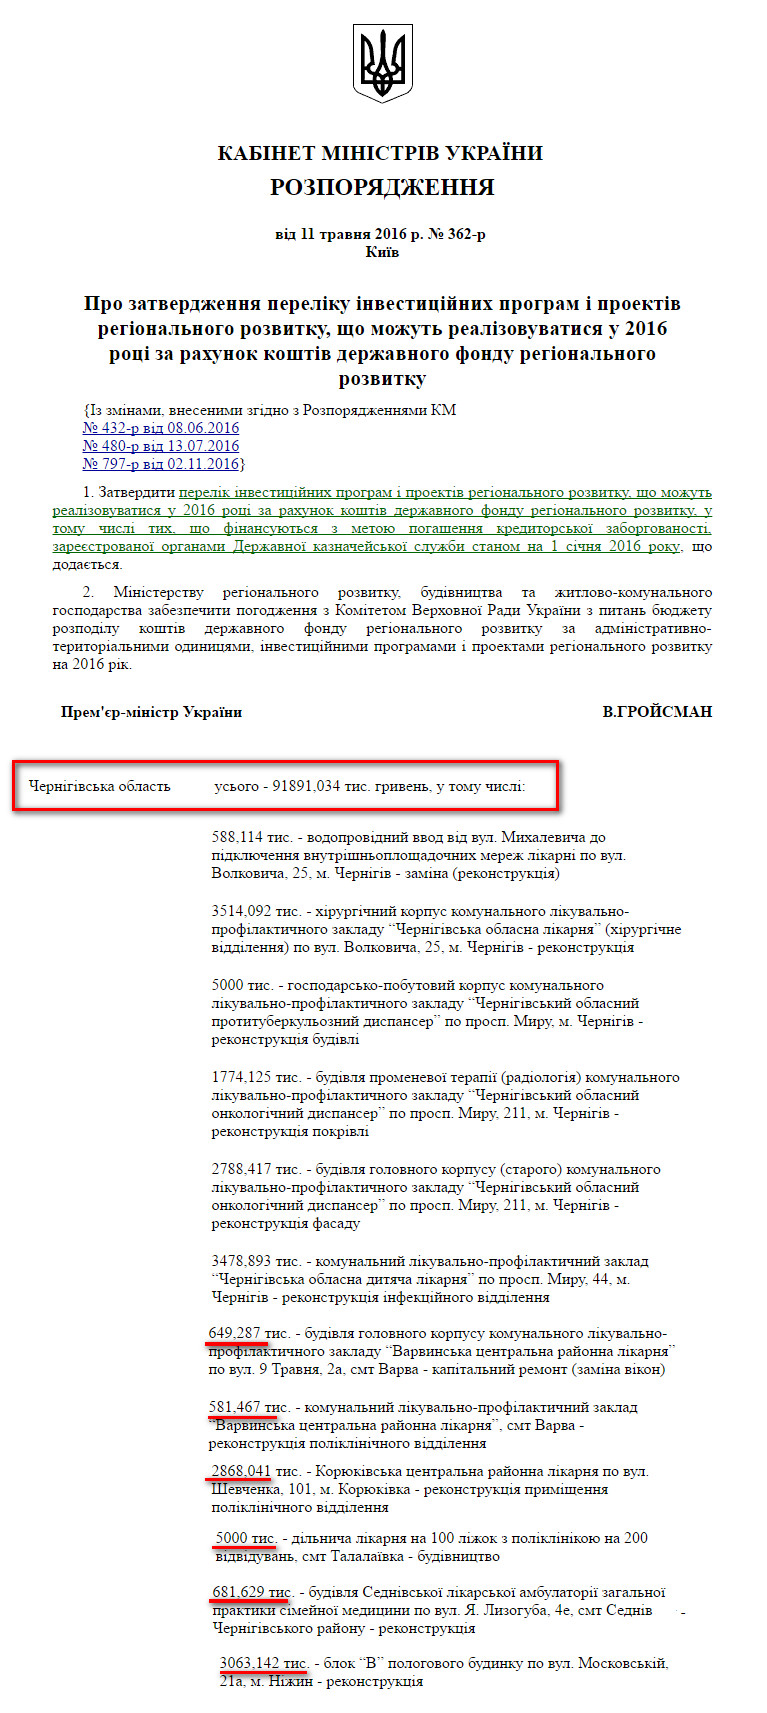 http://zakon3.rada.gov.ua/laws/show/362-2016-%D1%80